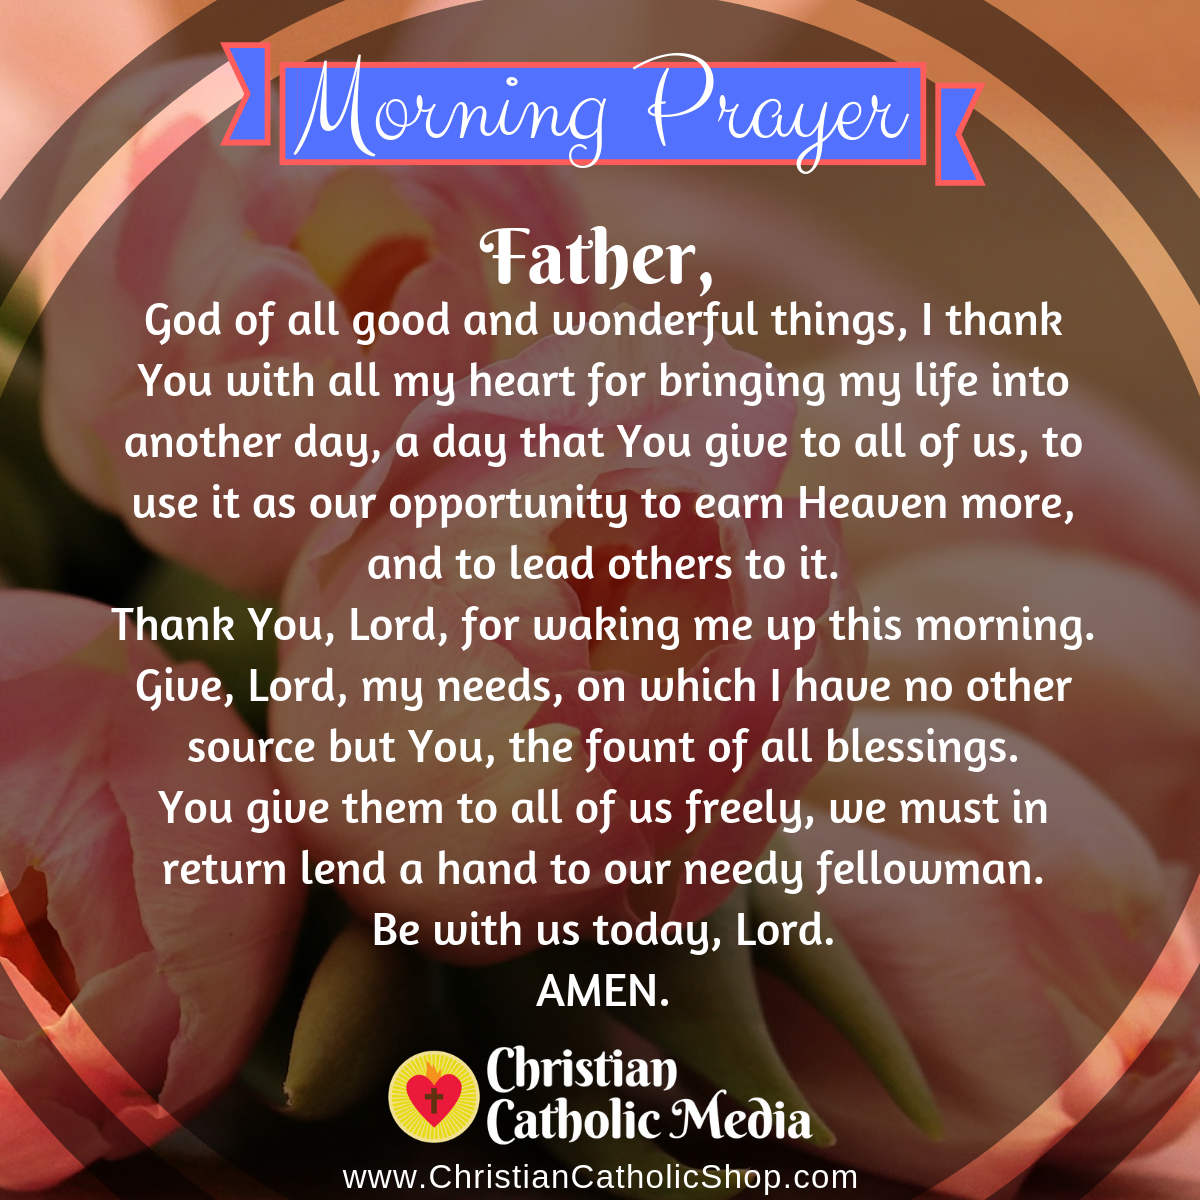 Catholic Morning Prayer Wednesday May 26, 2021 Christian Catholic Media